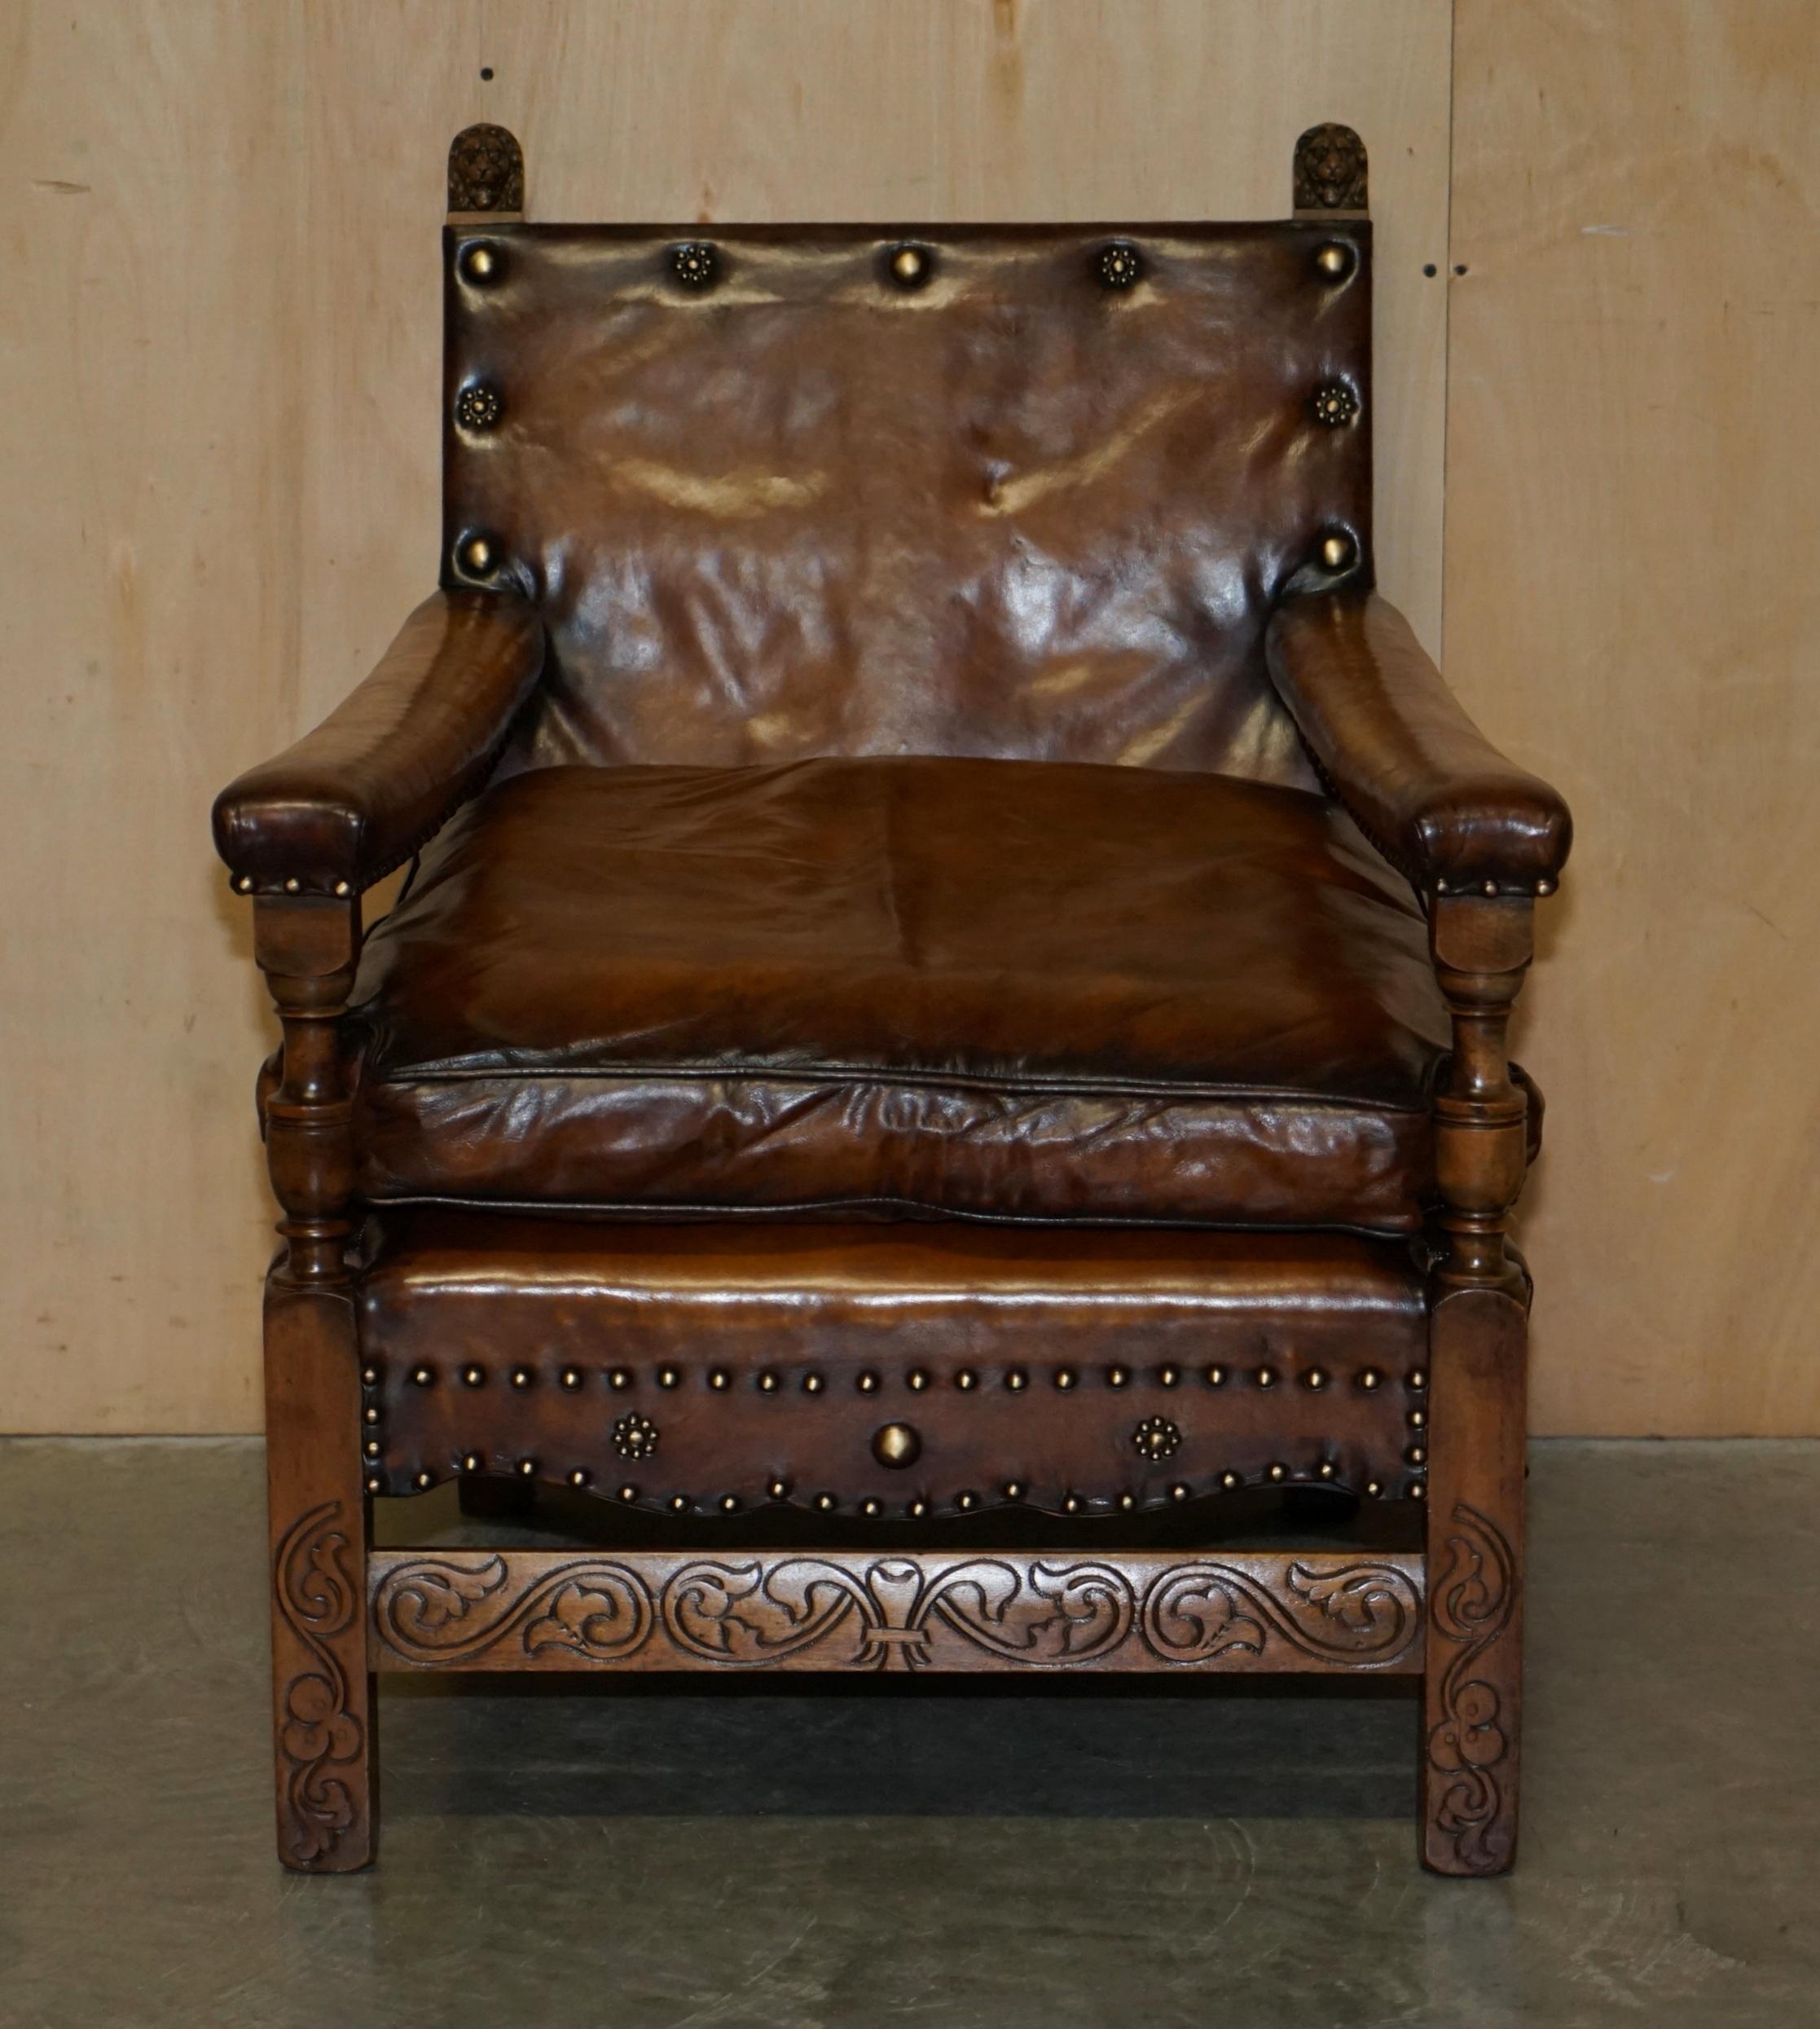 Wir freuen uns, diesen außergewöhnlichen handgeschnitzten edwardianischen Sessel mit Löwenknäufen und handgefärbten braunen Lederbezügen, die mit antiken bronzenen übergroßen Nieten verziert sind, zum Verkauf anzubieten. 

Ein sehr gut aussehendes